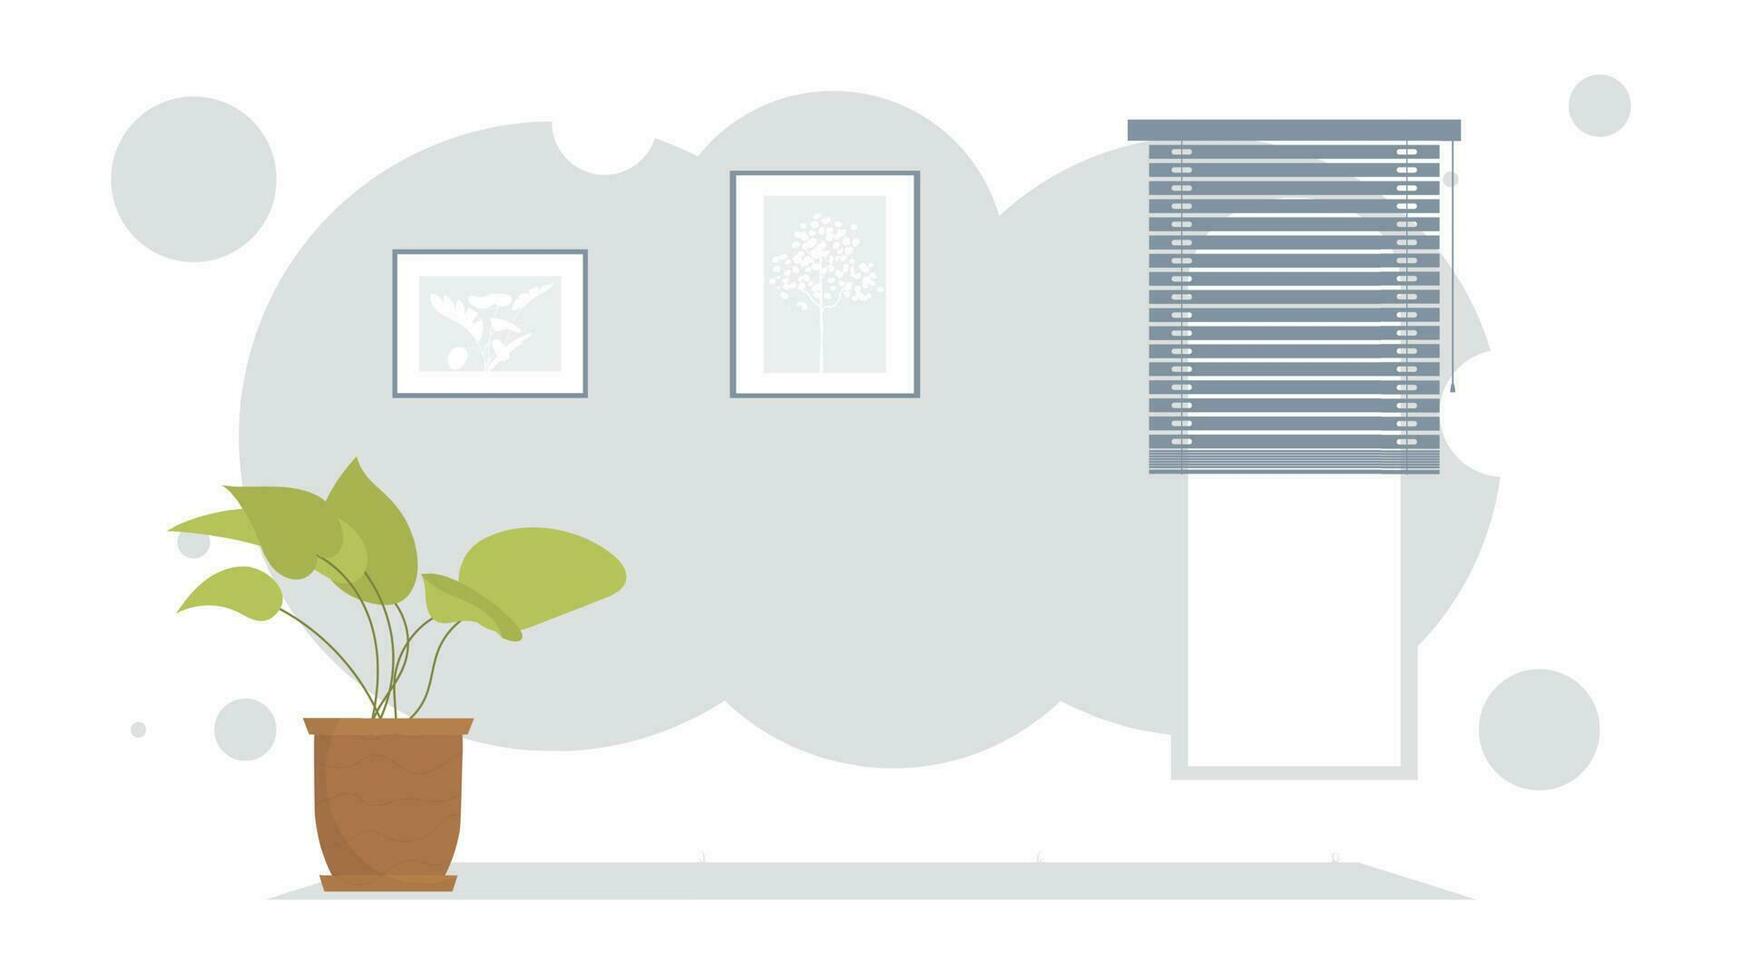 vivant pièce avec rideaux et plante d'appartement. intérieur. dessin animé style. vecteur